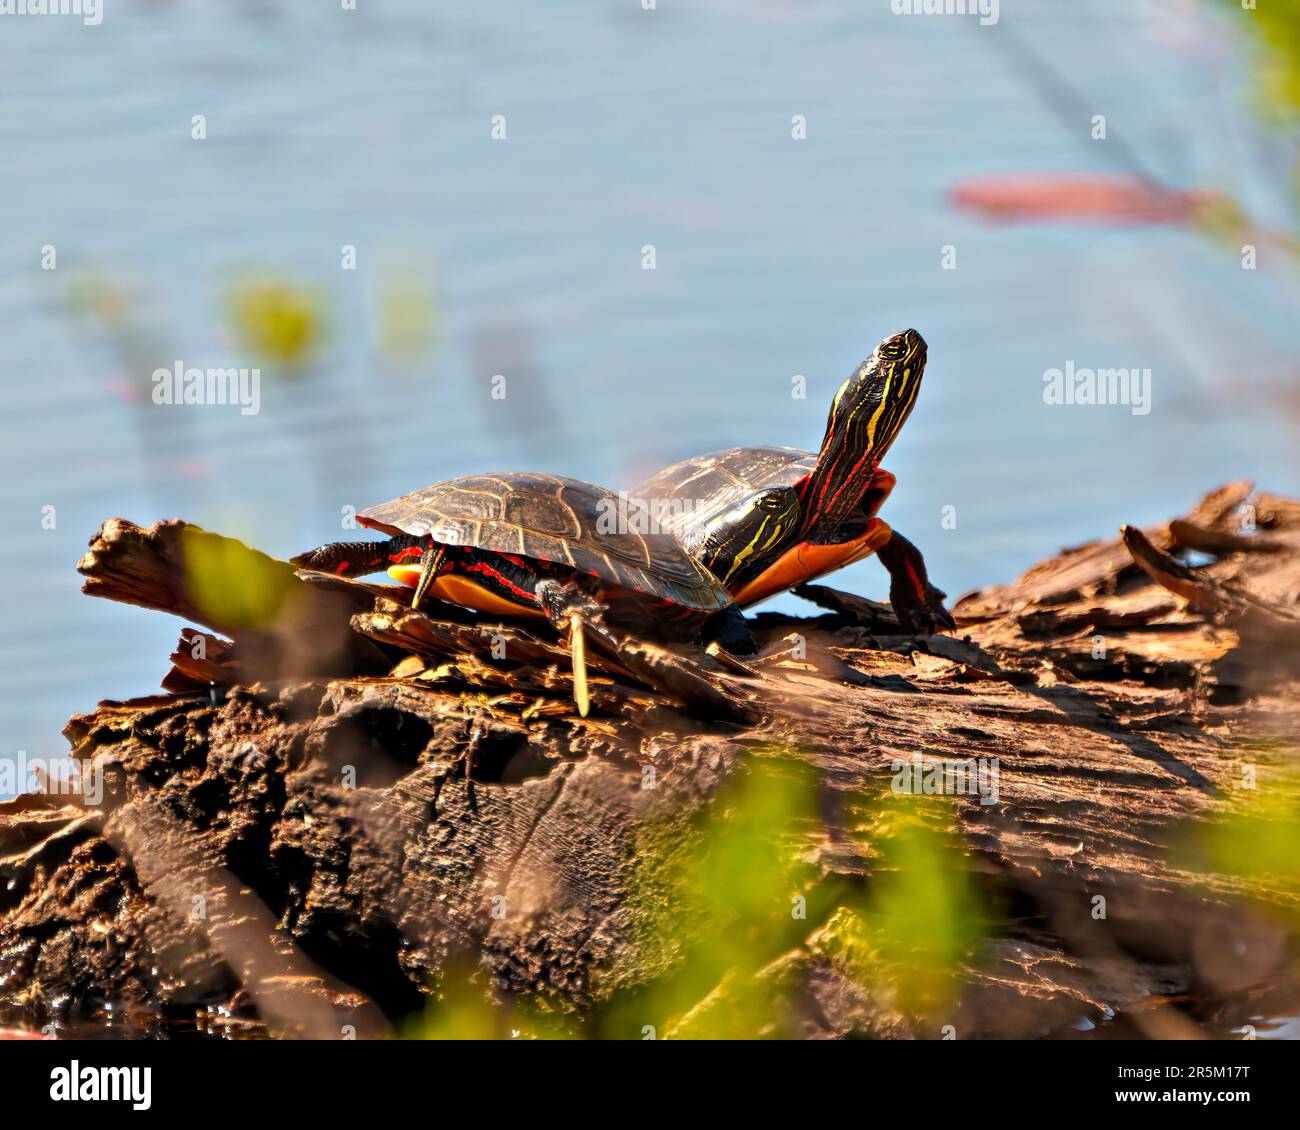 Pareja de tortugas pintadas descansando en un tronco en el estanque con fondo de agua borrosa en su entorno y hábitat circundante. Imagen de tortuga. Foto de stock